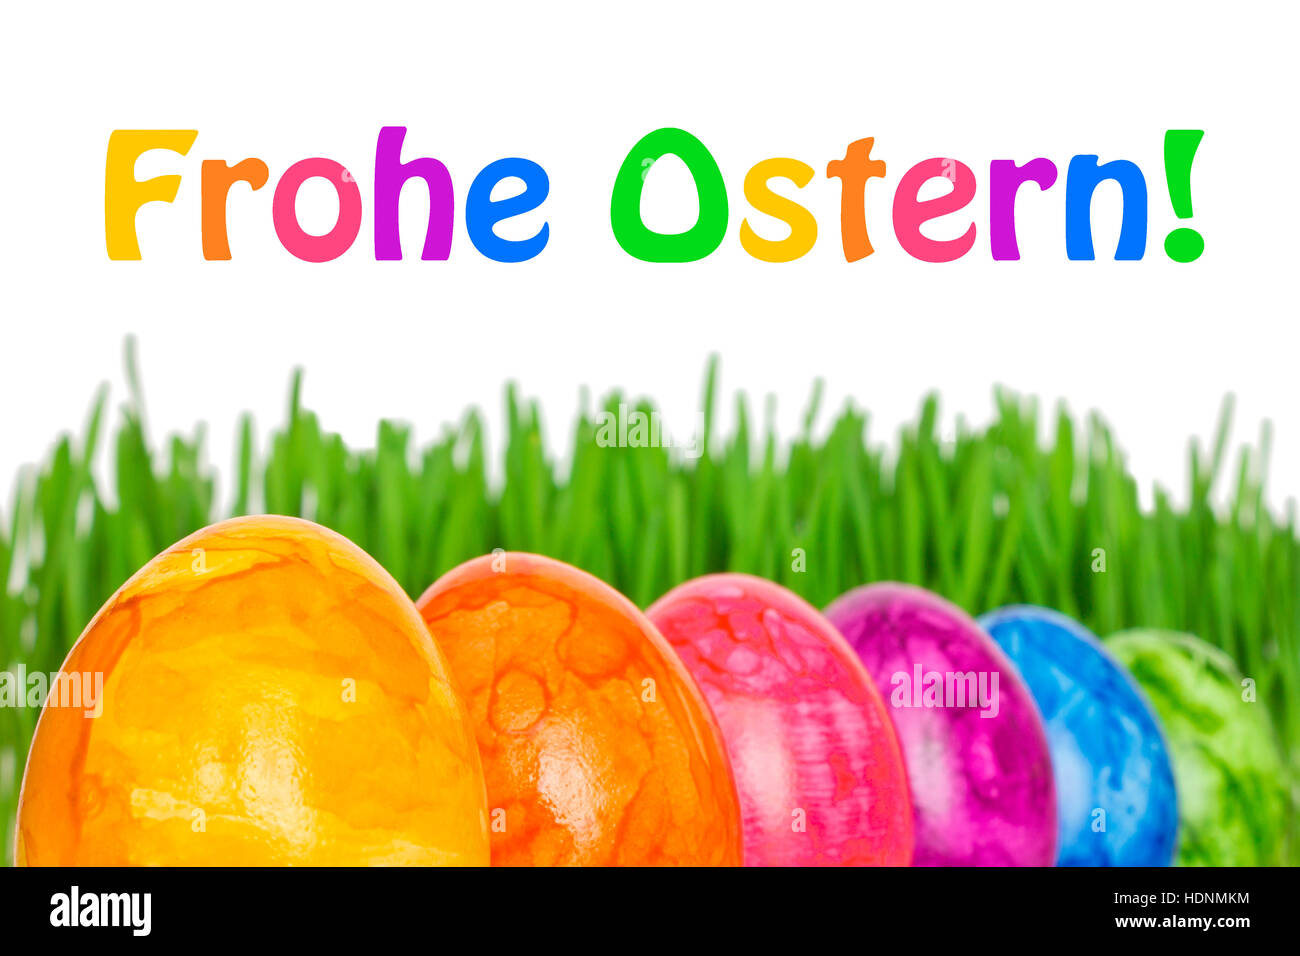 Template Joyeuses Pâques en allemand, Frohe Ostern, avec 6 Œufs de Pâques colorés en face de Green grass, couleurs arc-en-ciel lumineux Banque D'Images